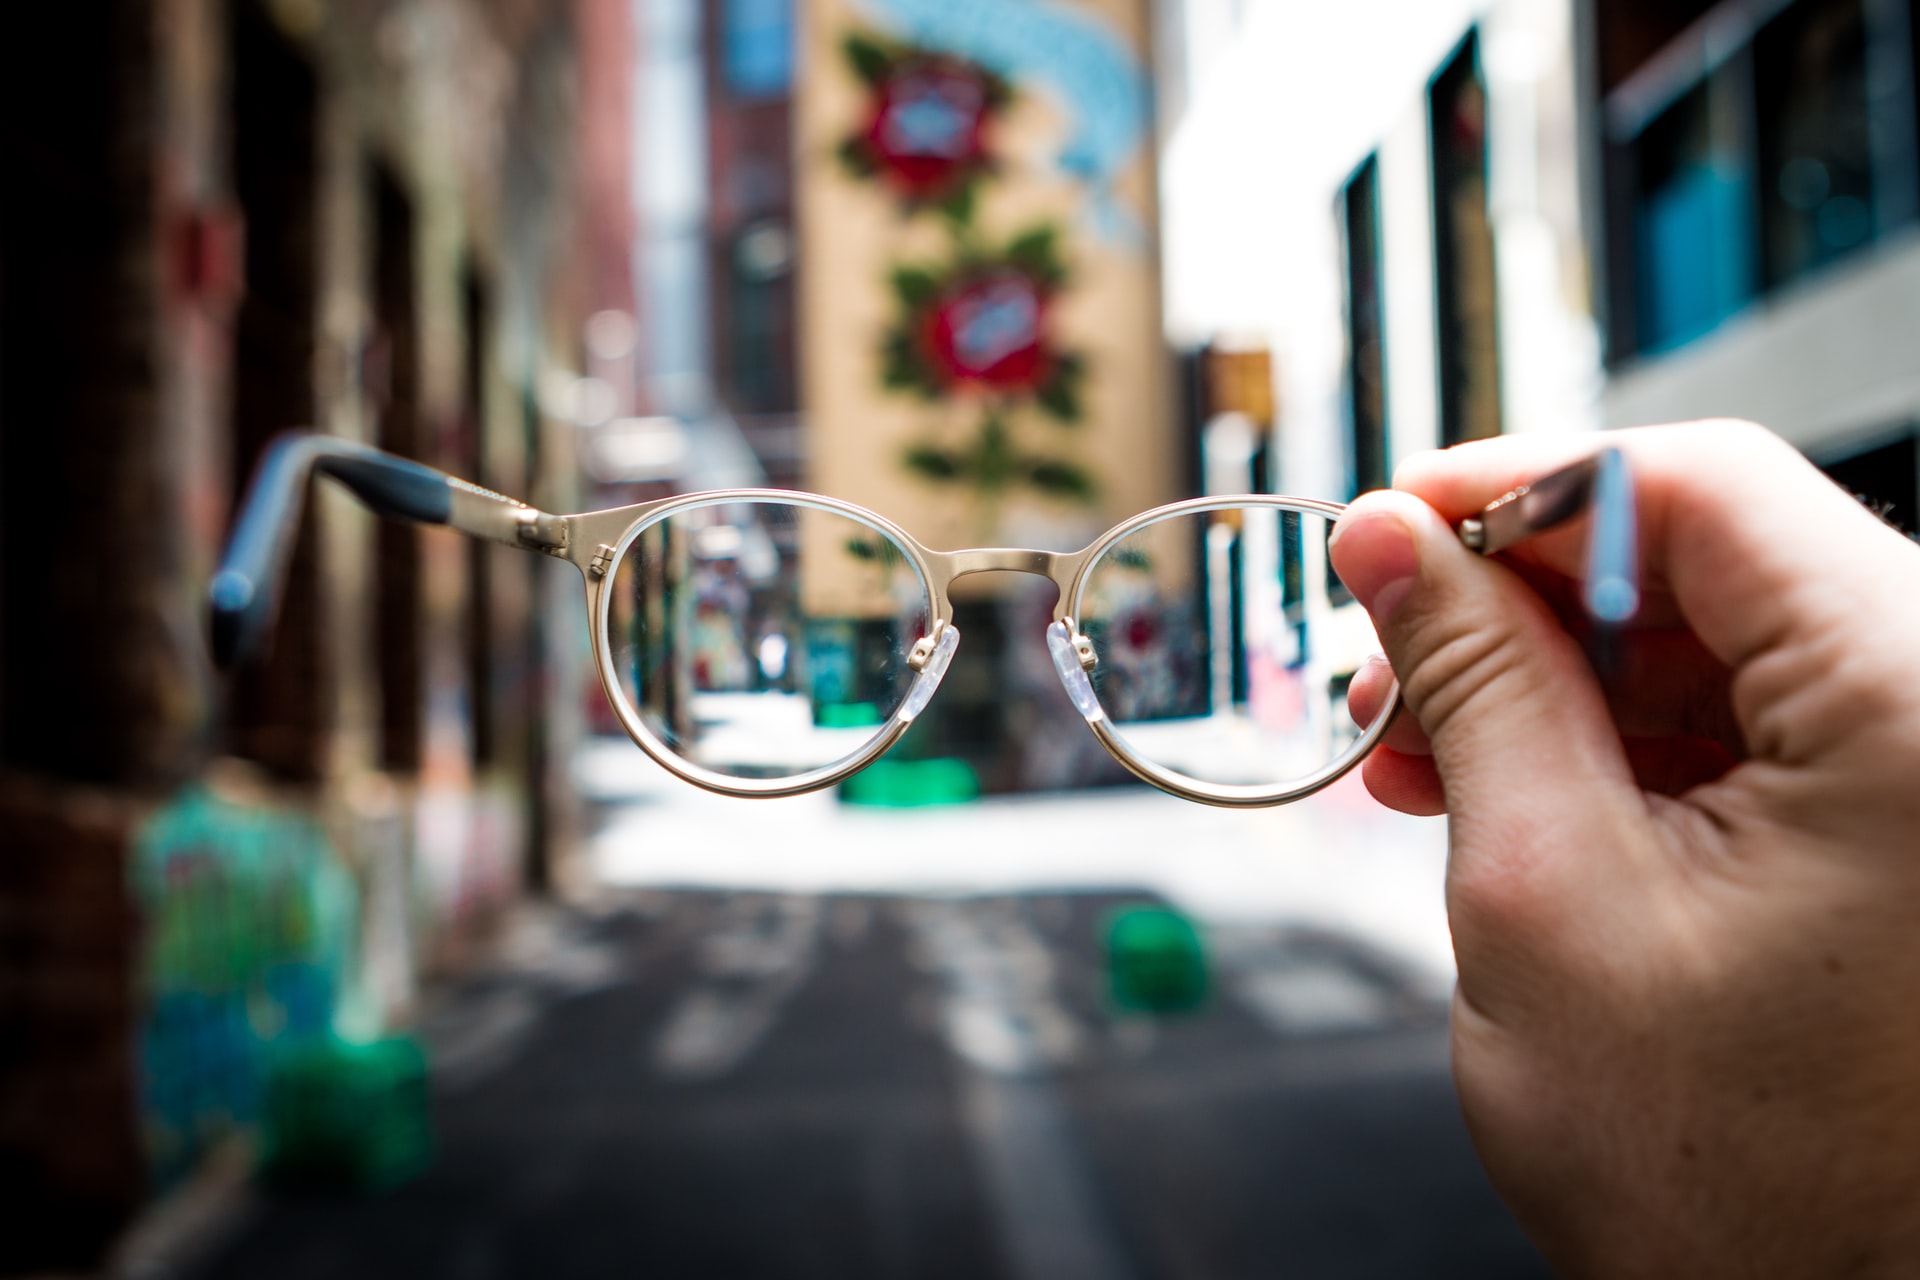 La miopía se puede tratar mediante el uso de anteojos que ayuden a enfocar los objetos que están lejos. (Foto Prensa Libre: Josh Calabrese on Unsplash).